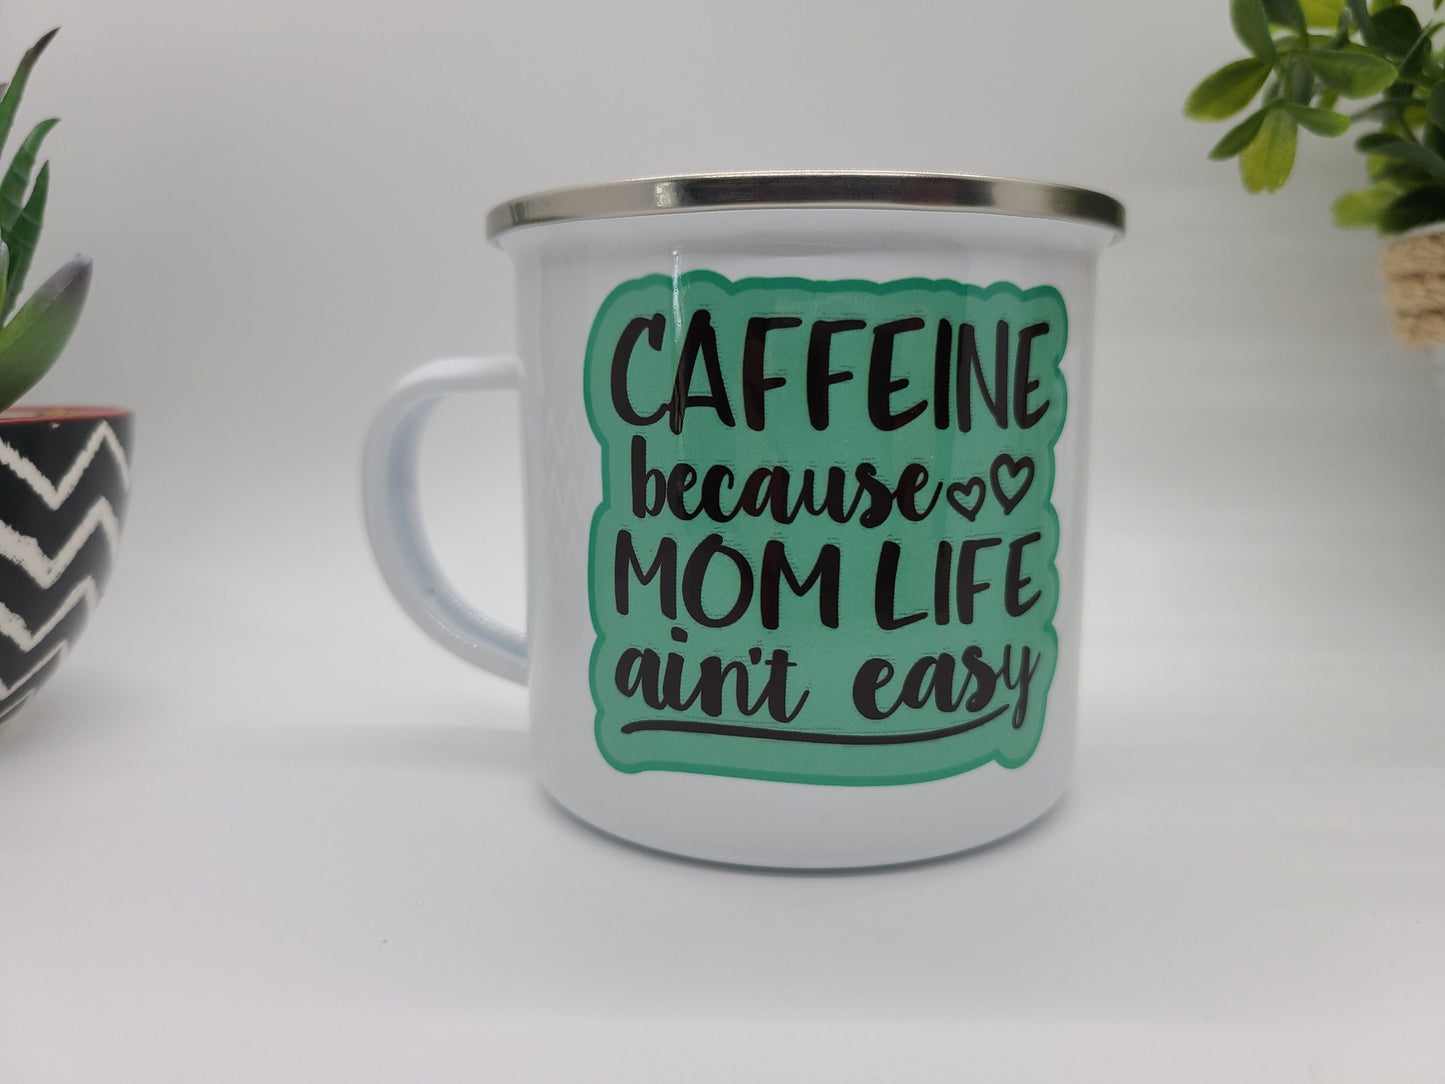 Mom Life Small Enamel Mug